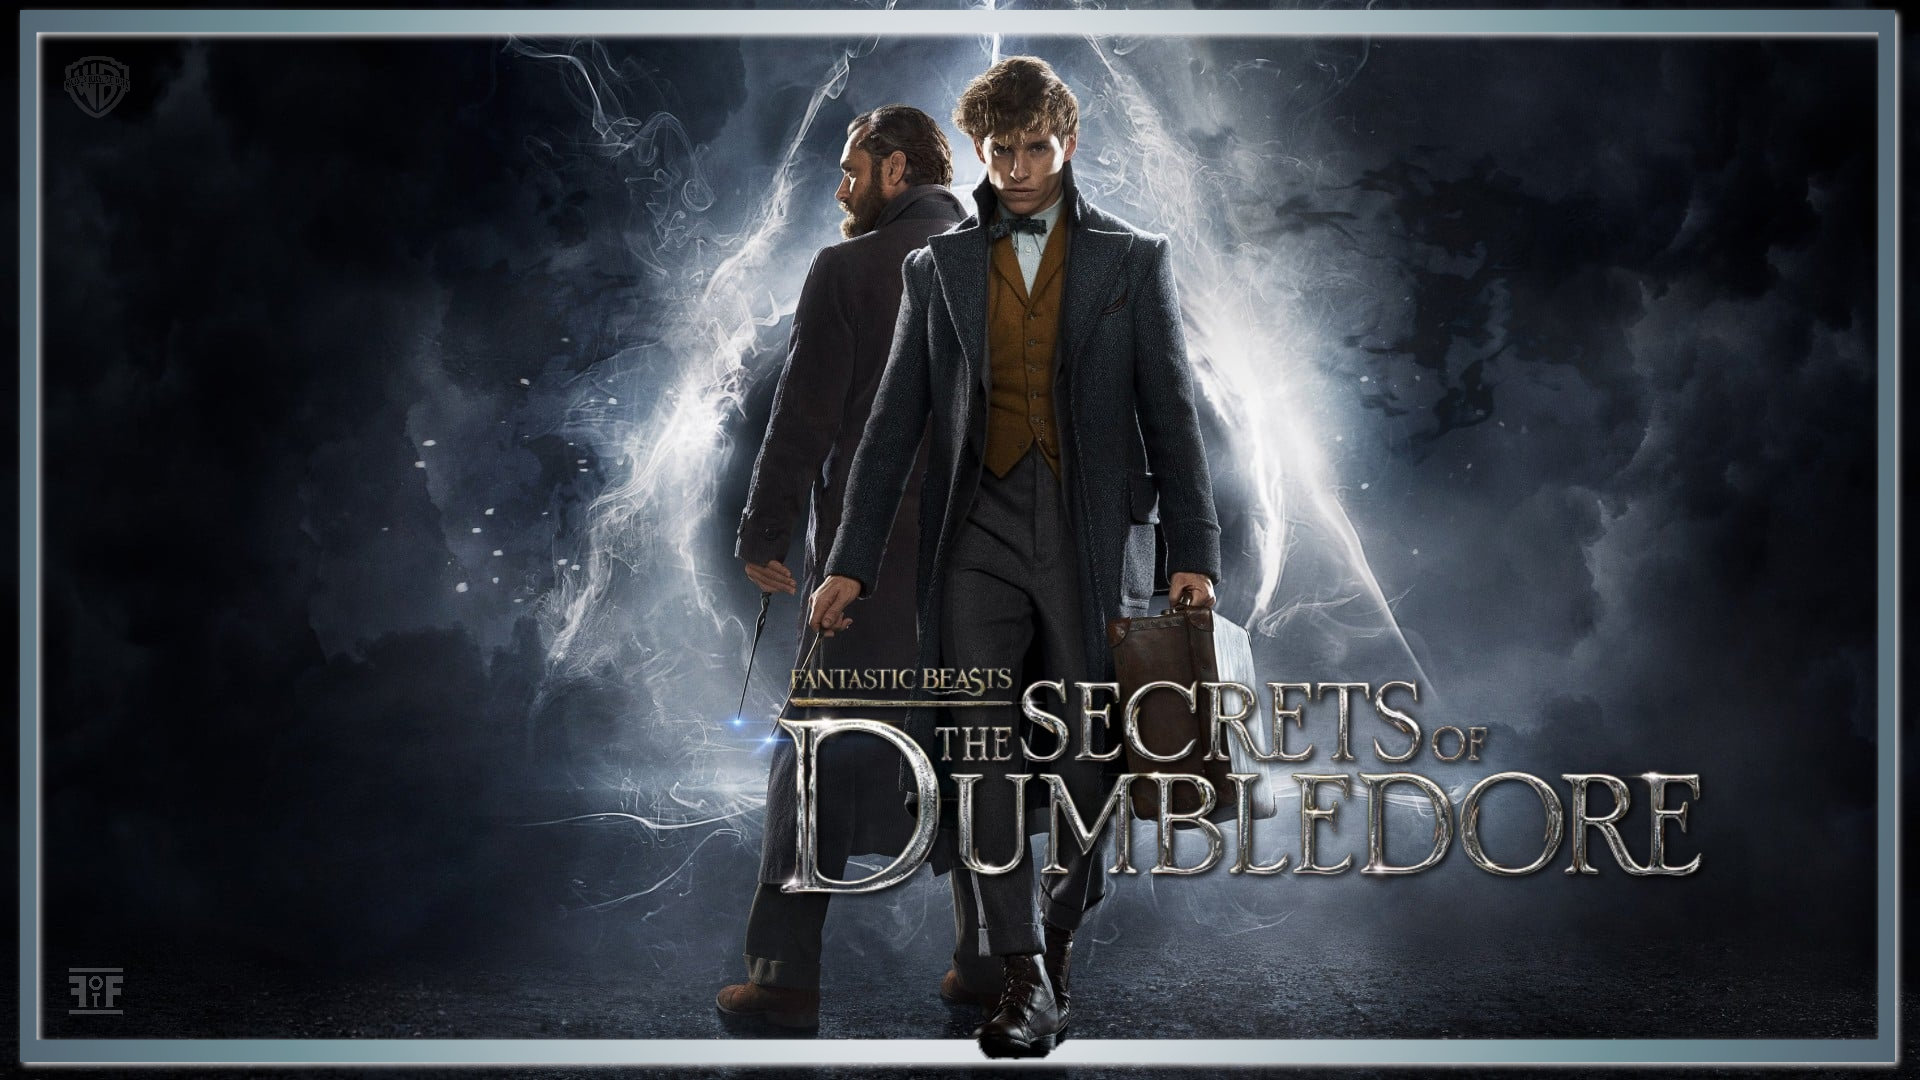 فیلم جانوران شگفت انگیز: اسرار دامبلدور 2022 Fantastic Beasts: The Secrets of Dumbledore: انتشار در خفا!